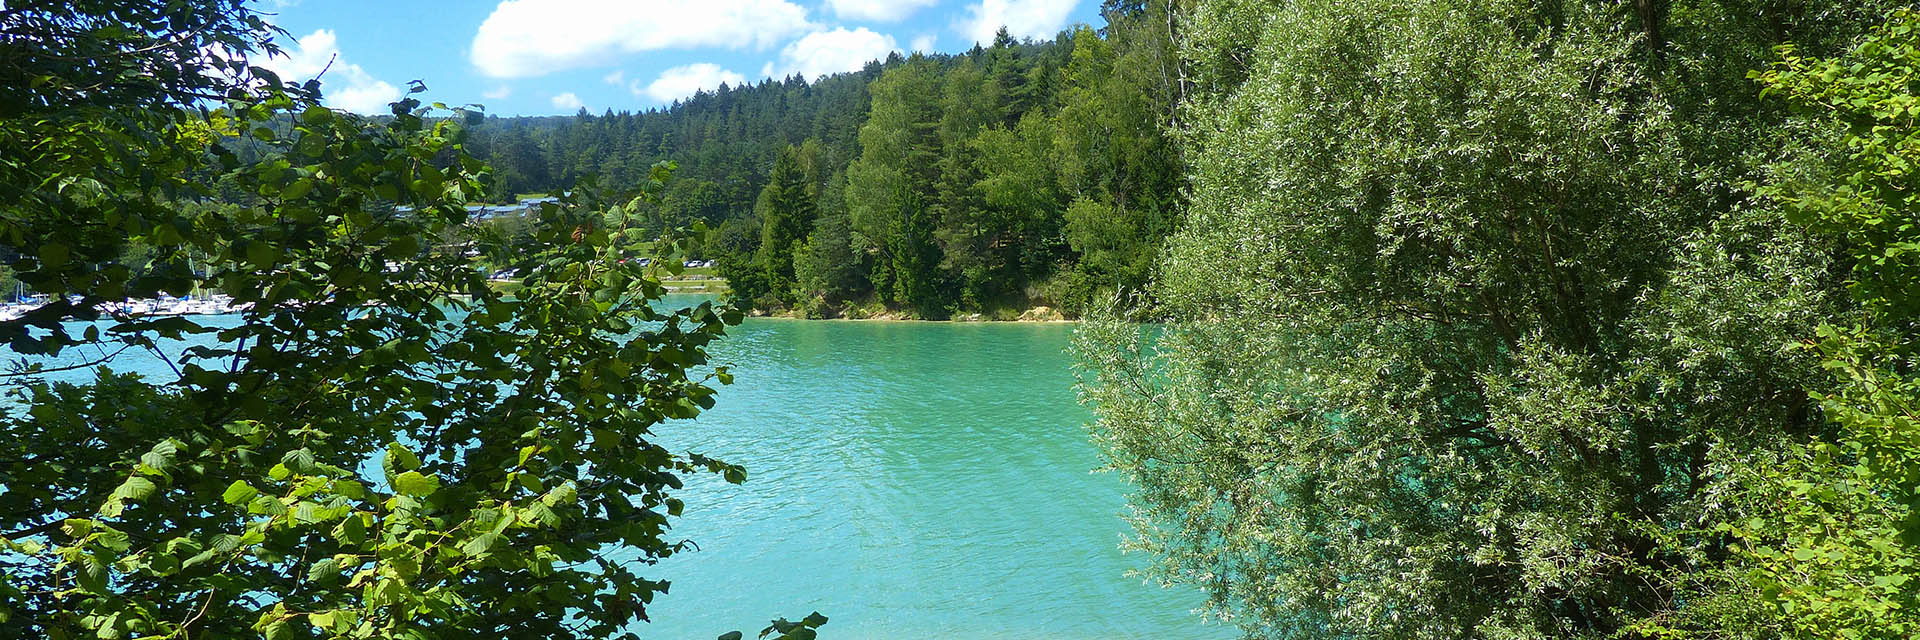 Les Chalets du Lac de Vouglans - Village Vacances Cap France